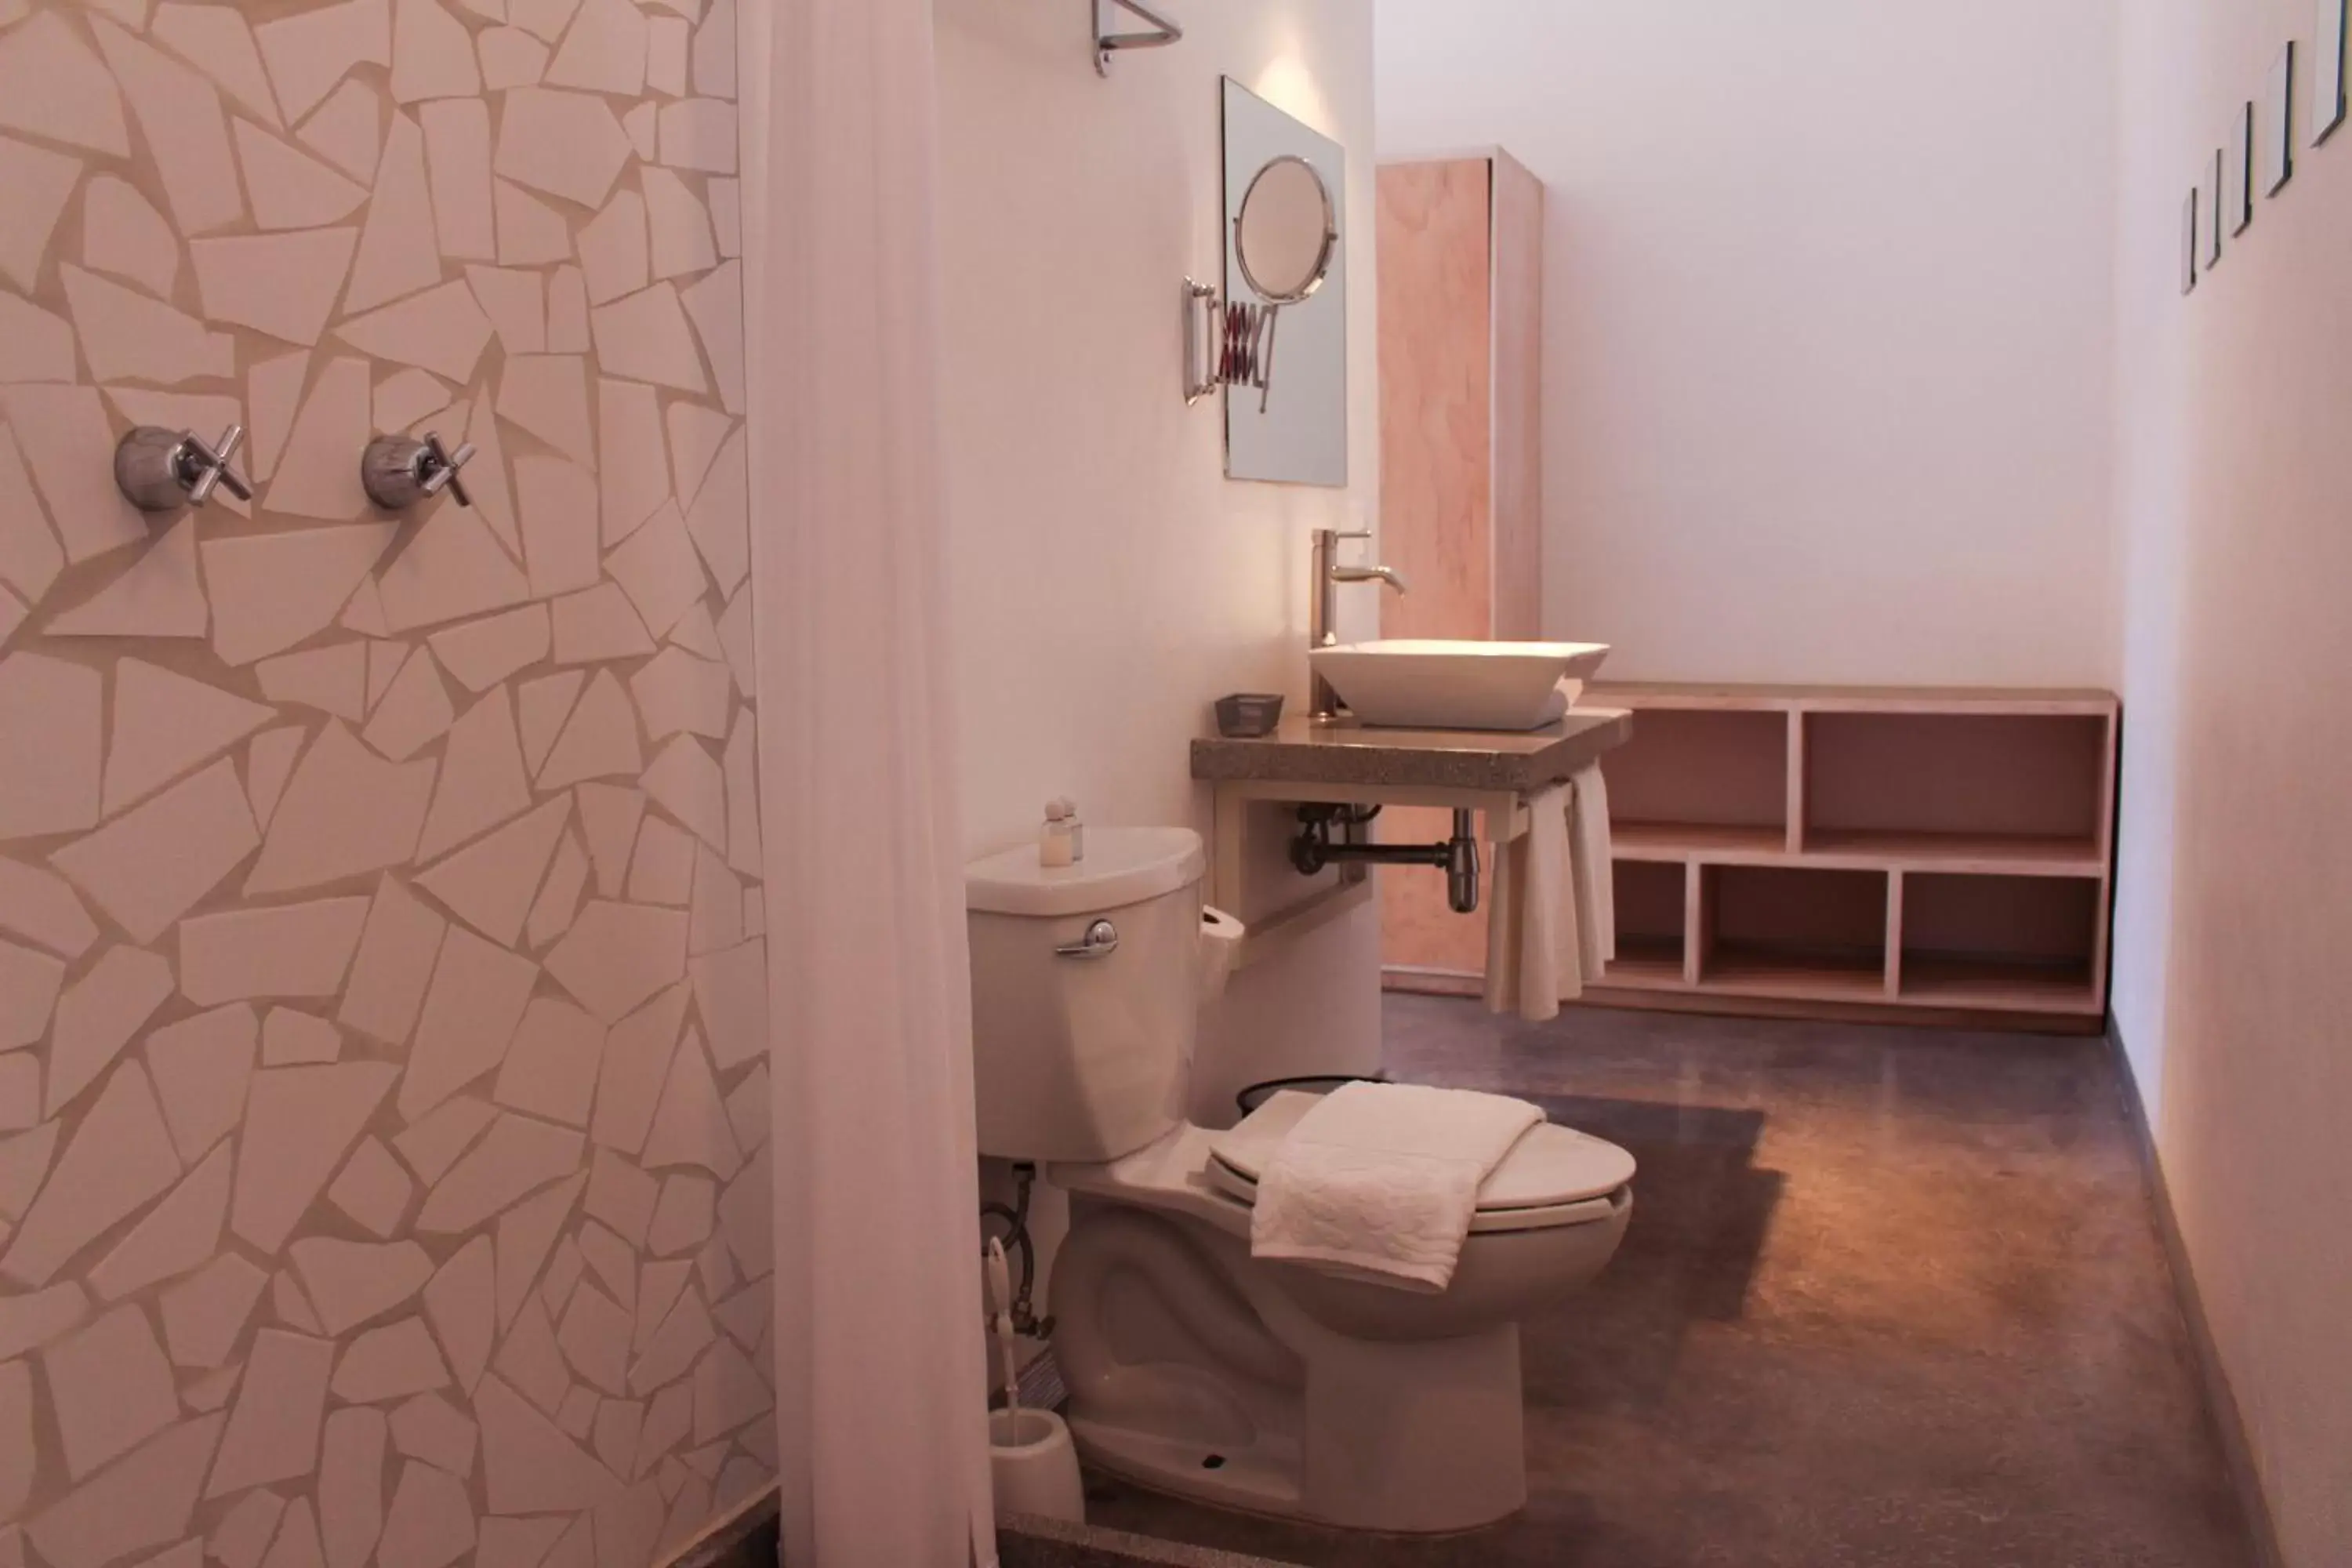 Bathroom in Hotel Cosijo - San Jeronimo Tlacochahuaya